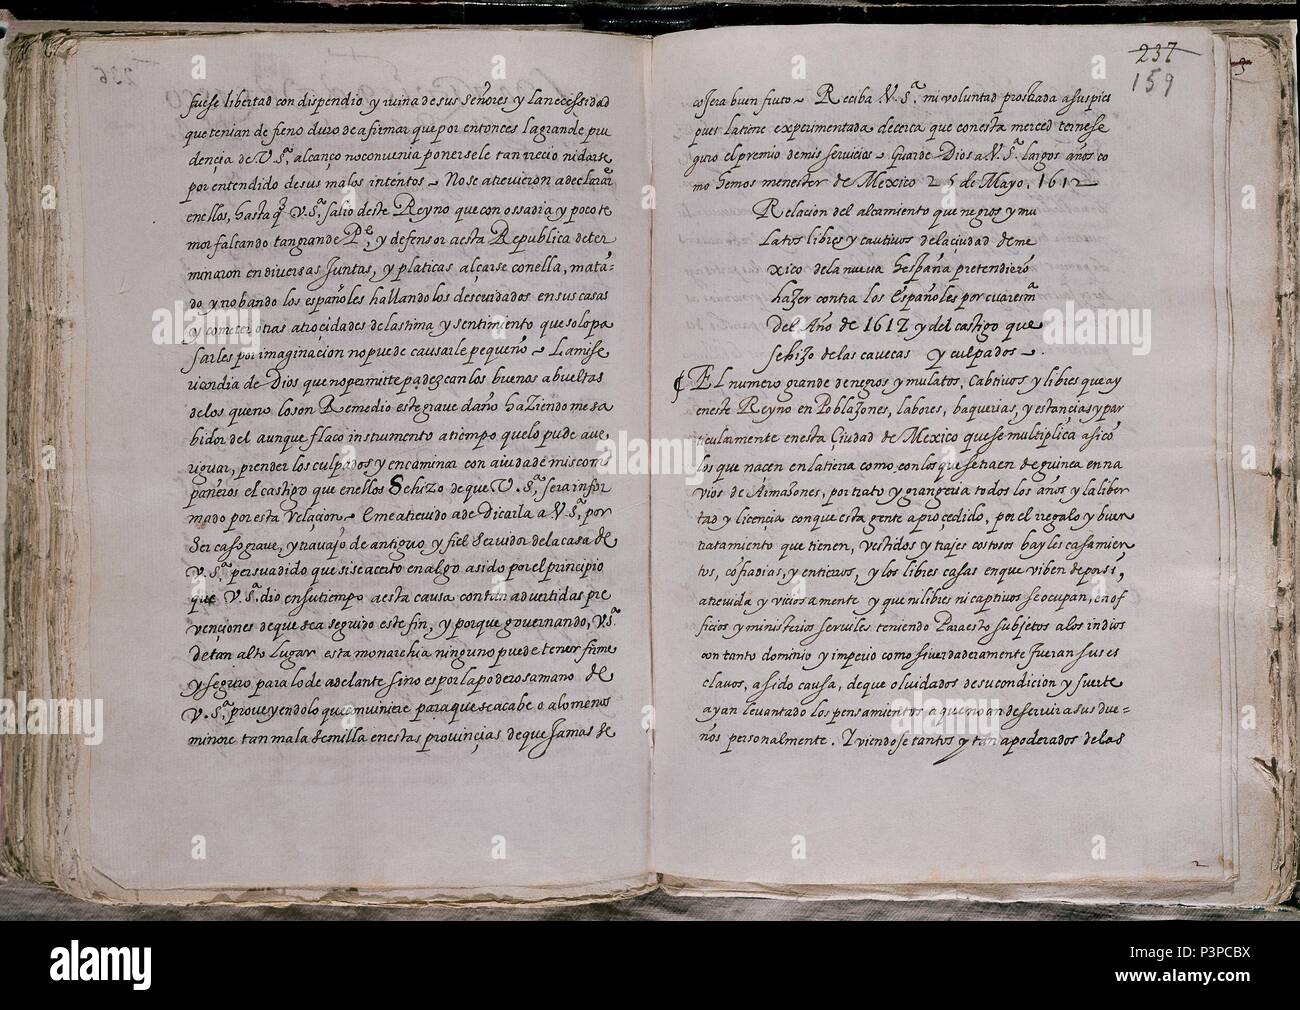 ALZAMIENTO DE NEGROS Y MULATOS 1612. Location: BIBLIOTECA NACIONAL-COLECCION, MADRID, SPAIN. Stock Photo